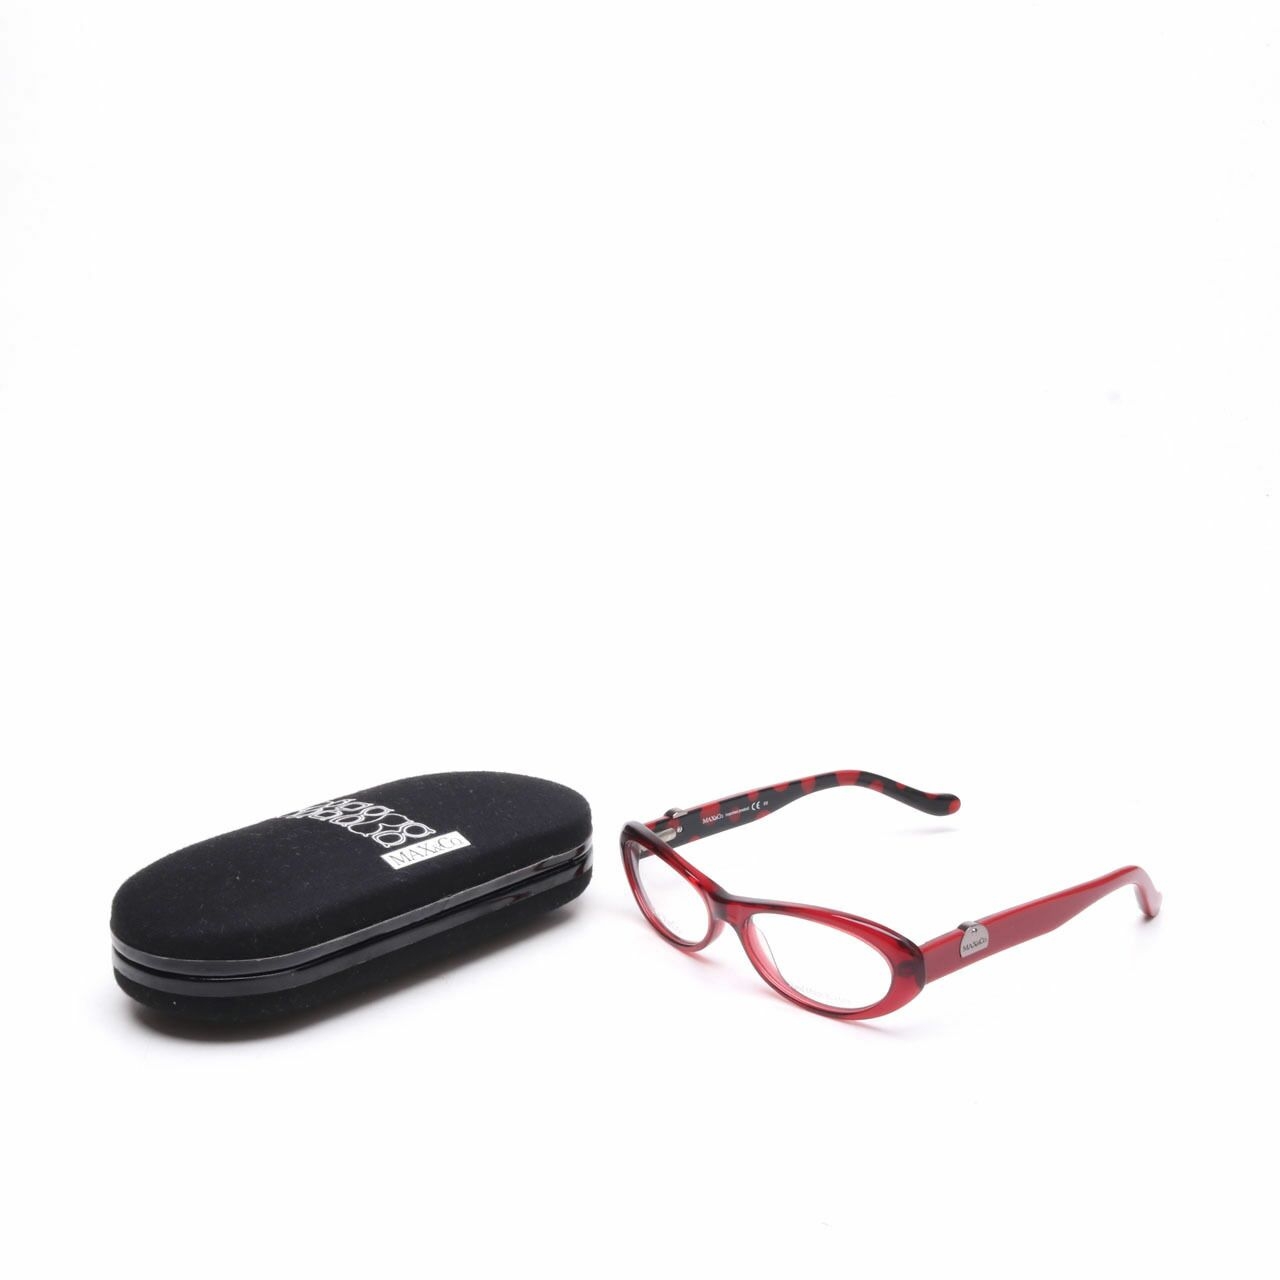 Max & Co. Red Sunglasses